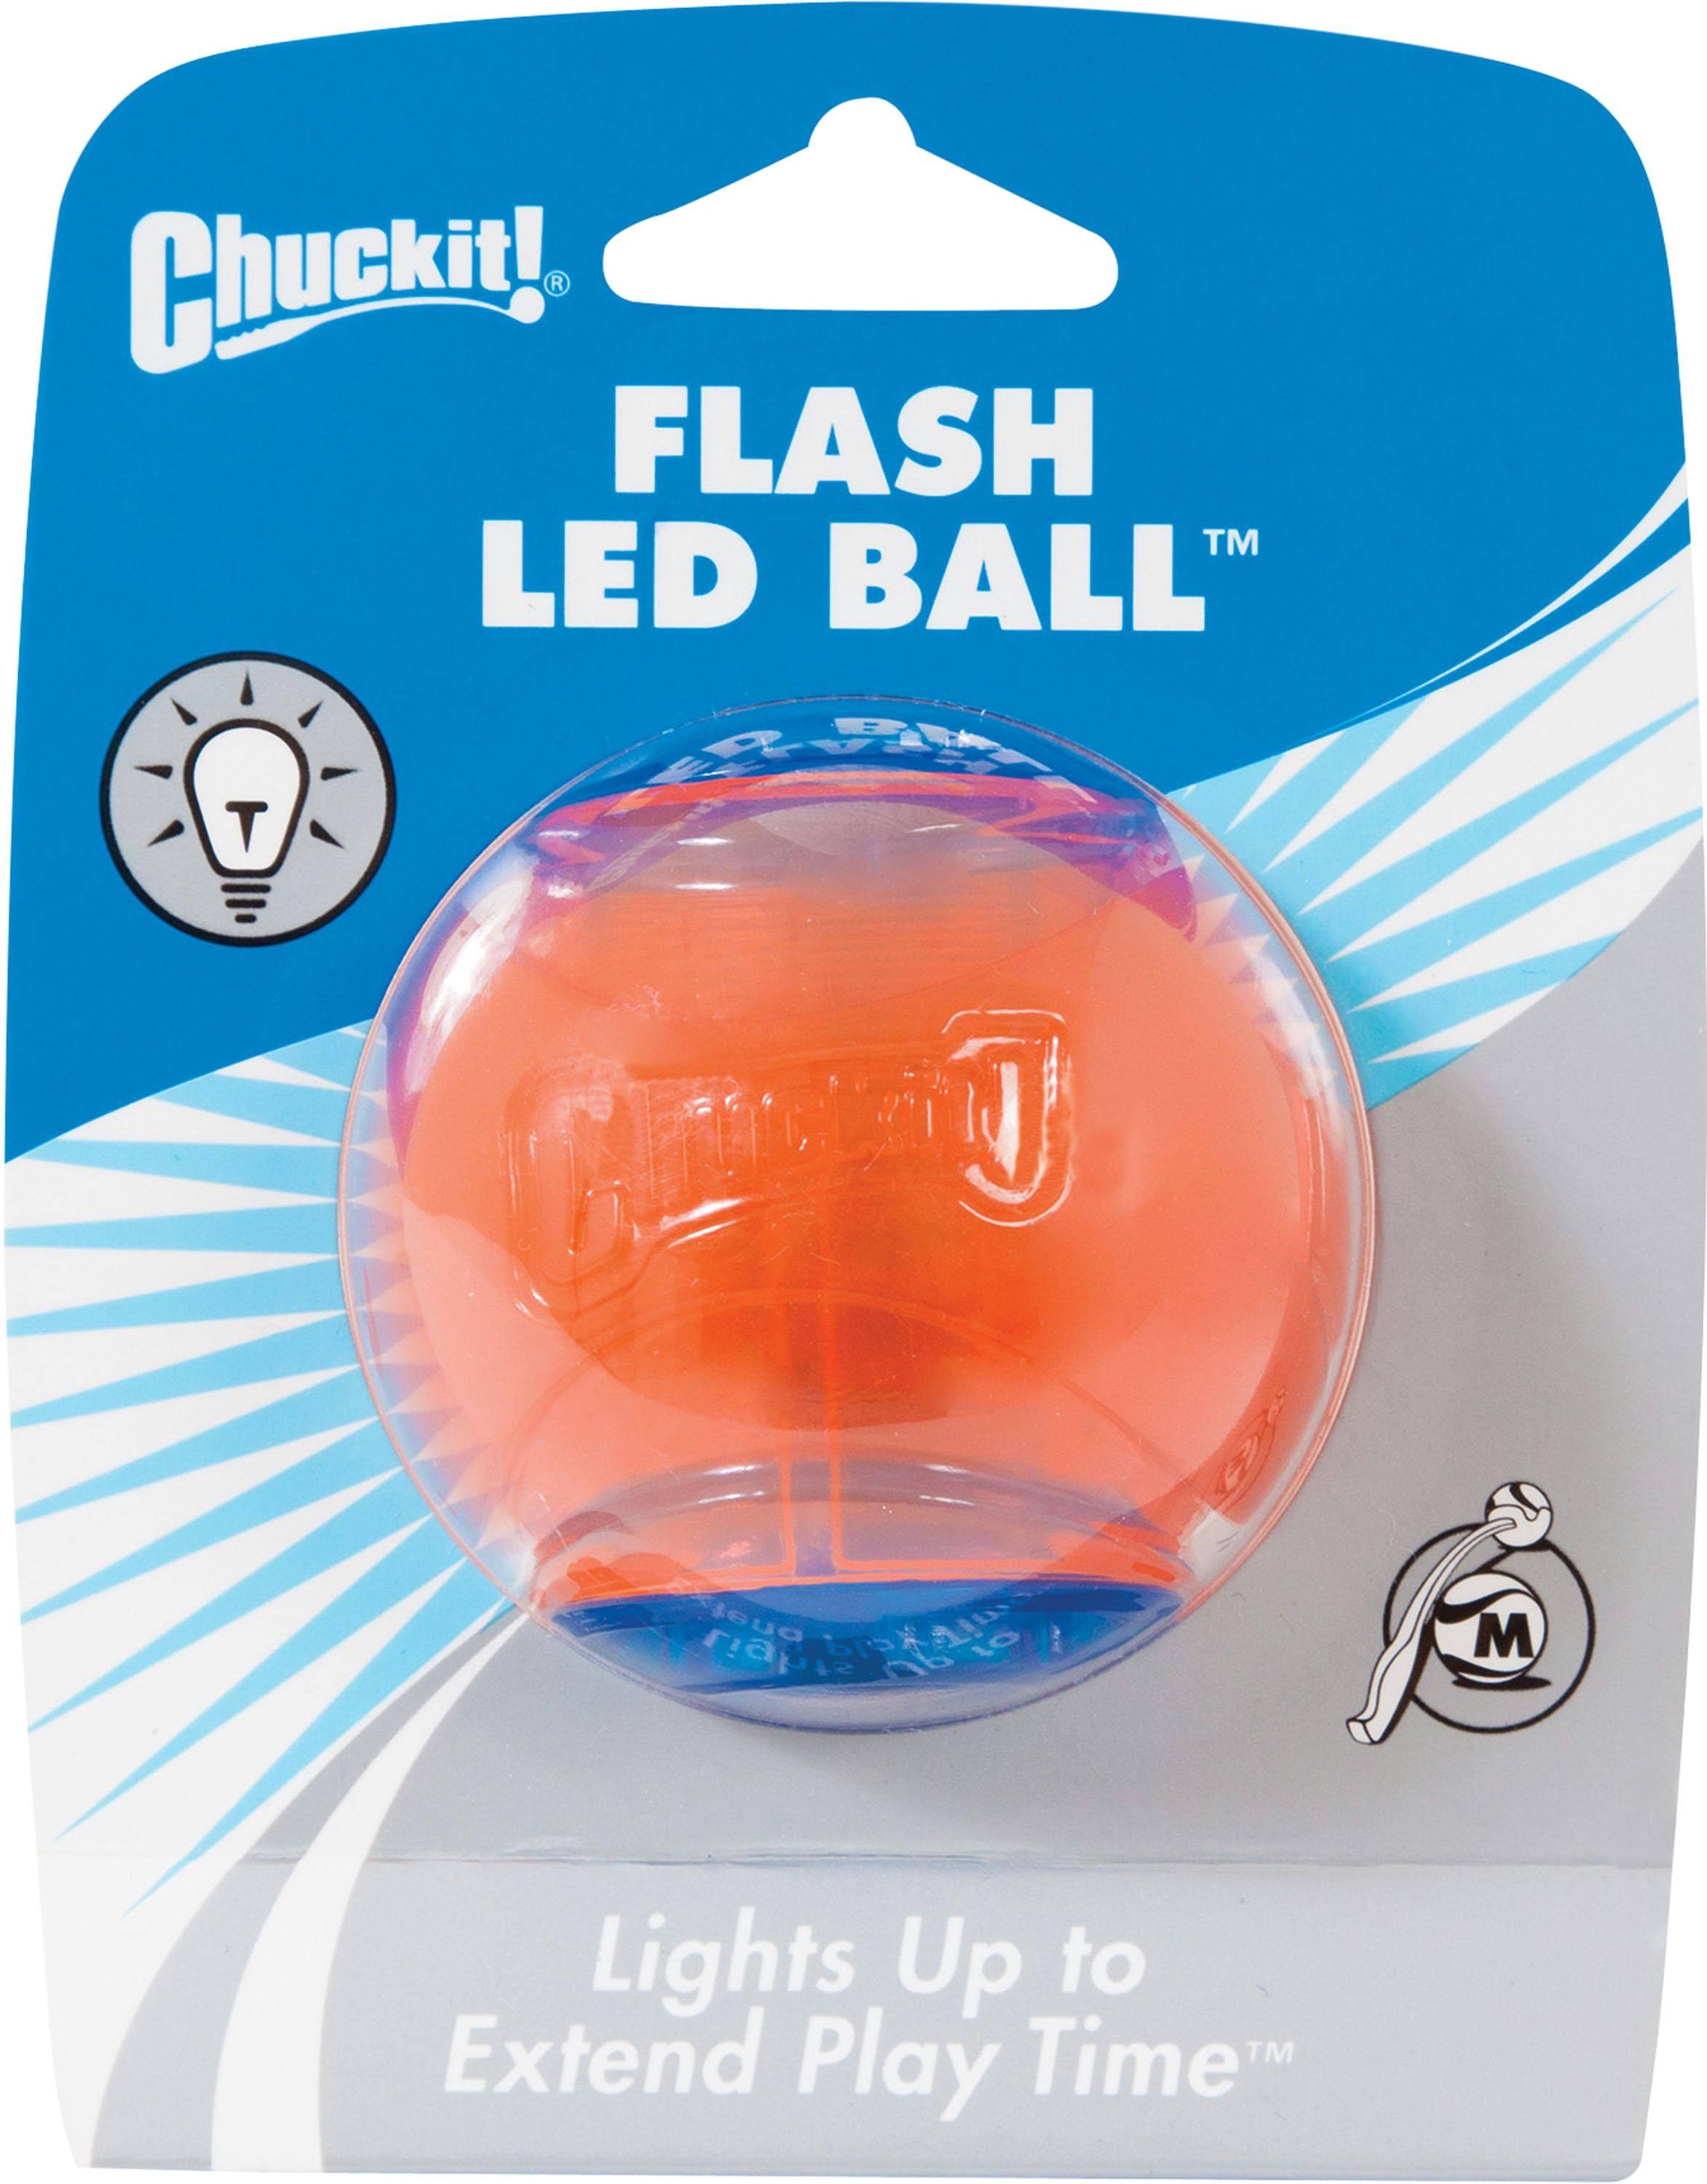 Canine hardware 33032 chuckit flash led ball, medium